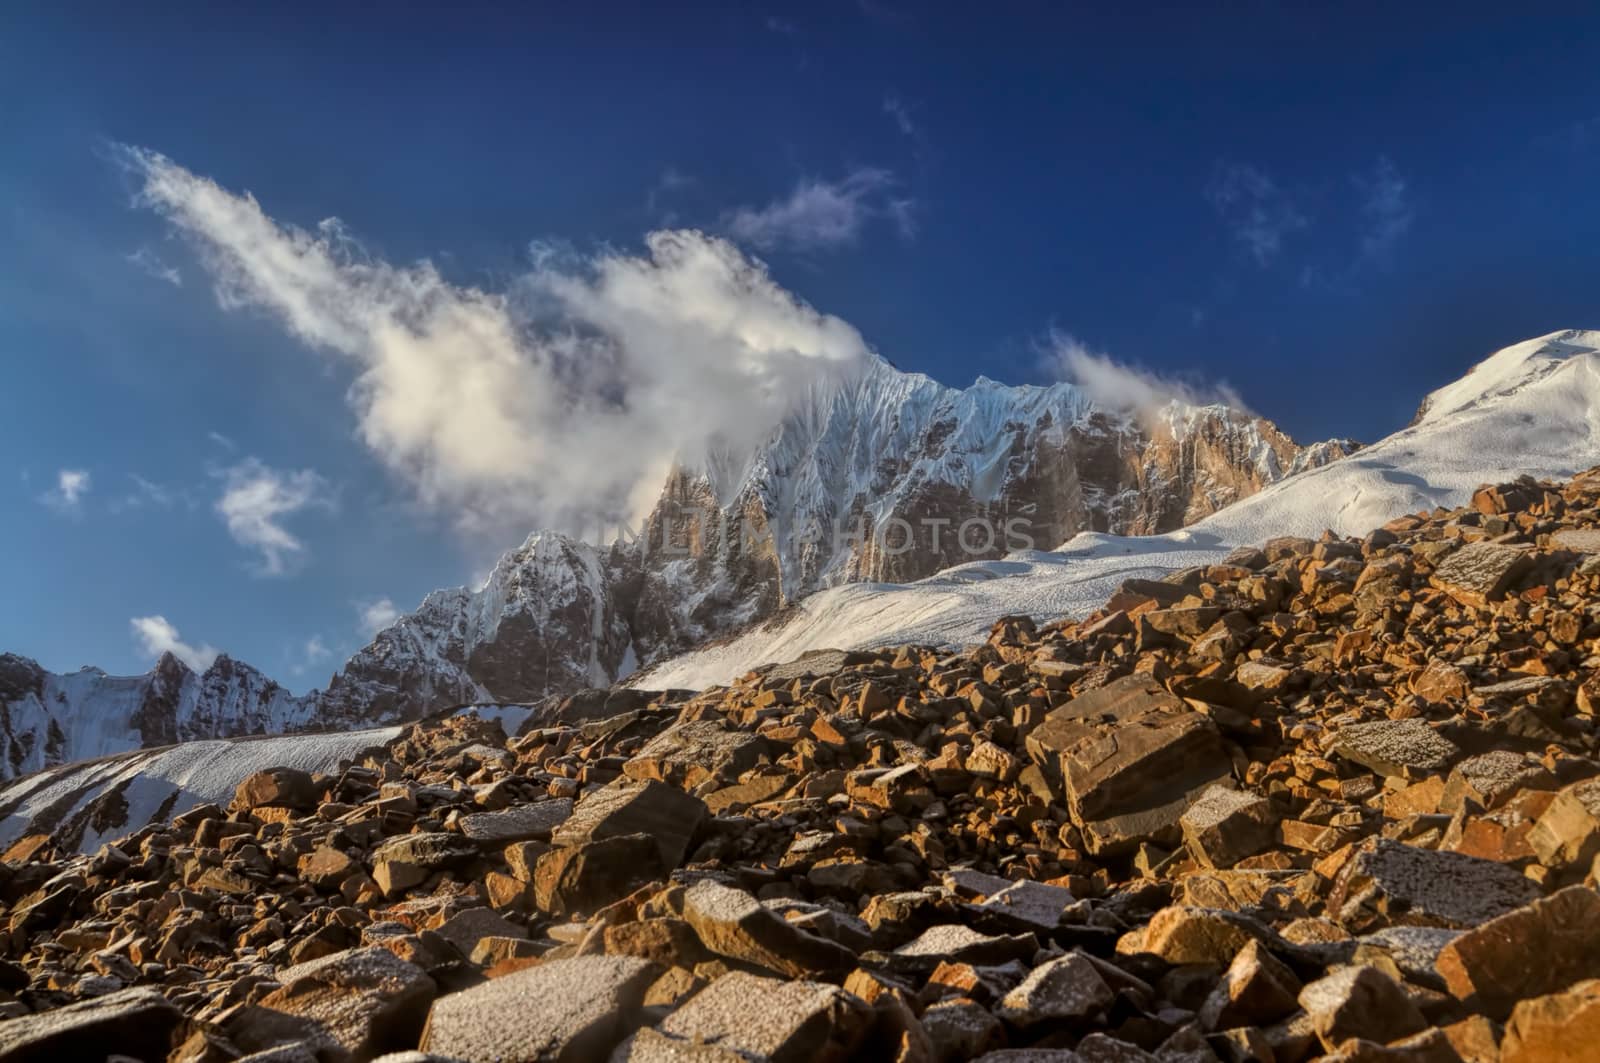 Mountain peaks in Tajikistan by MichalKnitl